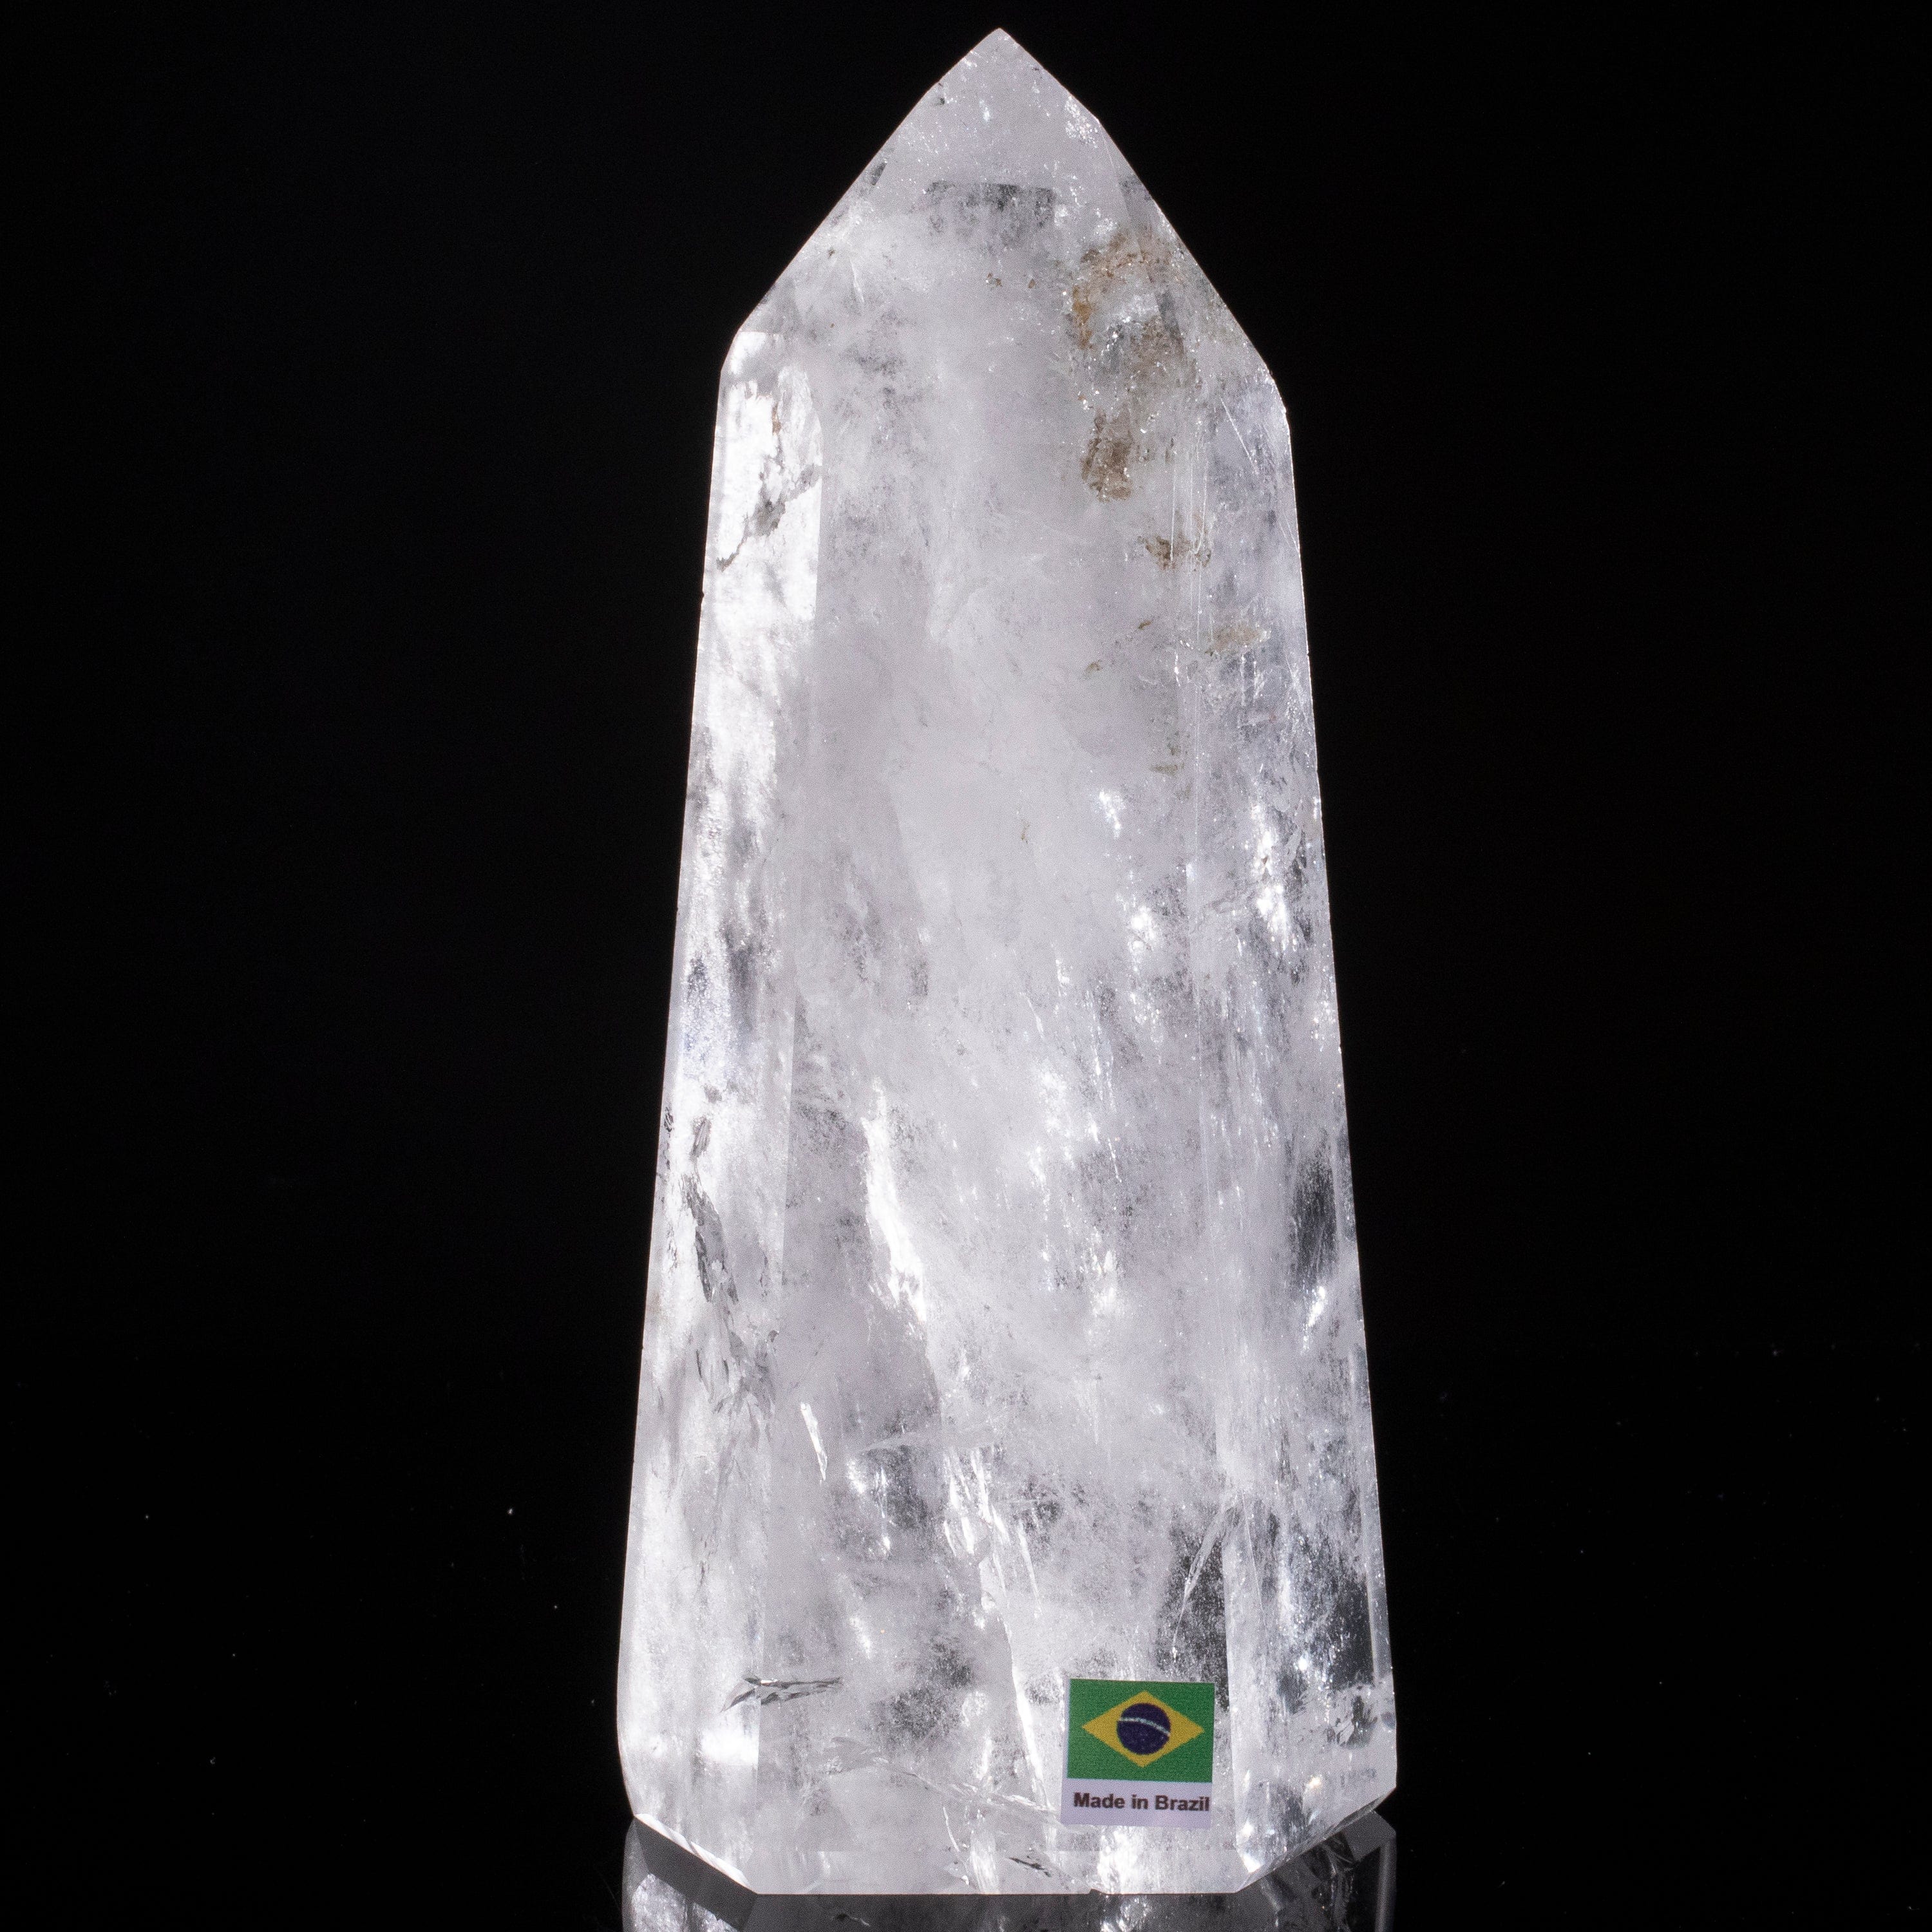 Kalifano Quartz Natural Quartz Obelisk from Brazil - 7.5" / 1,100 grams QZ1500.011